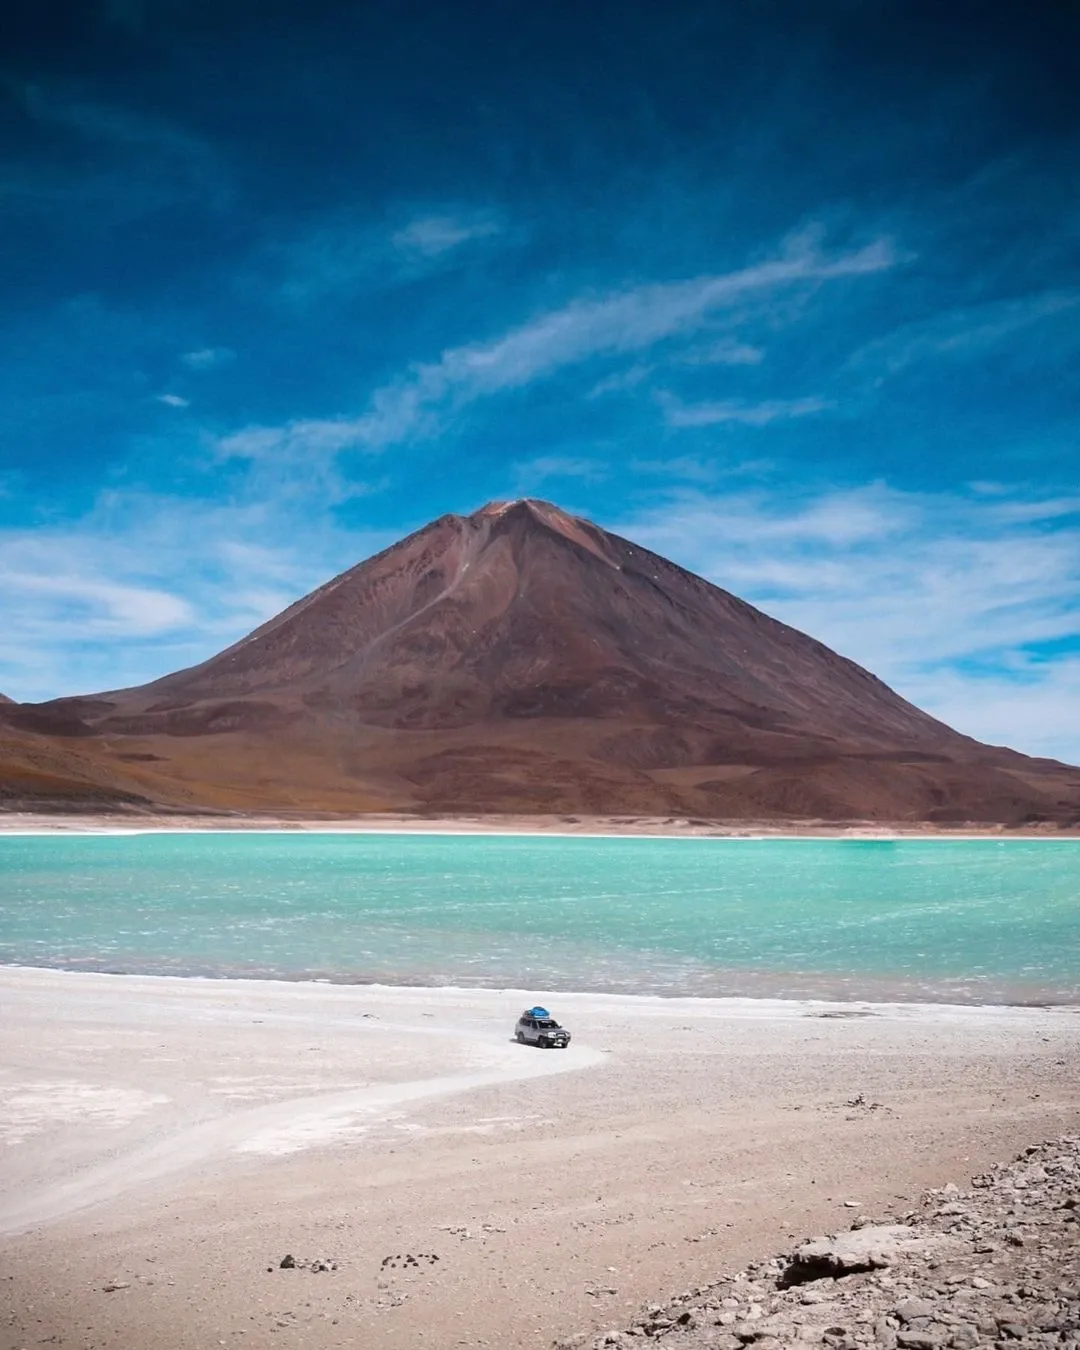 (From/to Atacama) Shared Salar de Uyuni 4 Days Tour